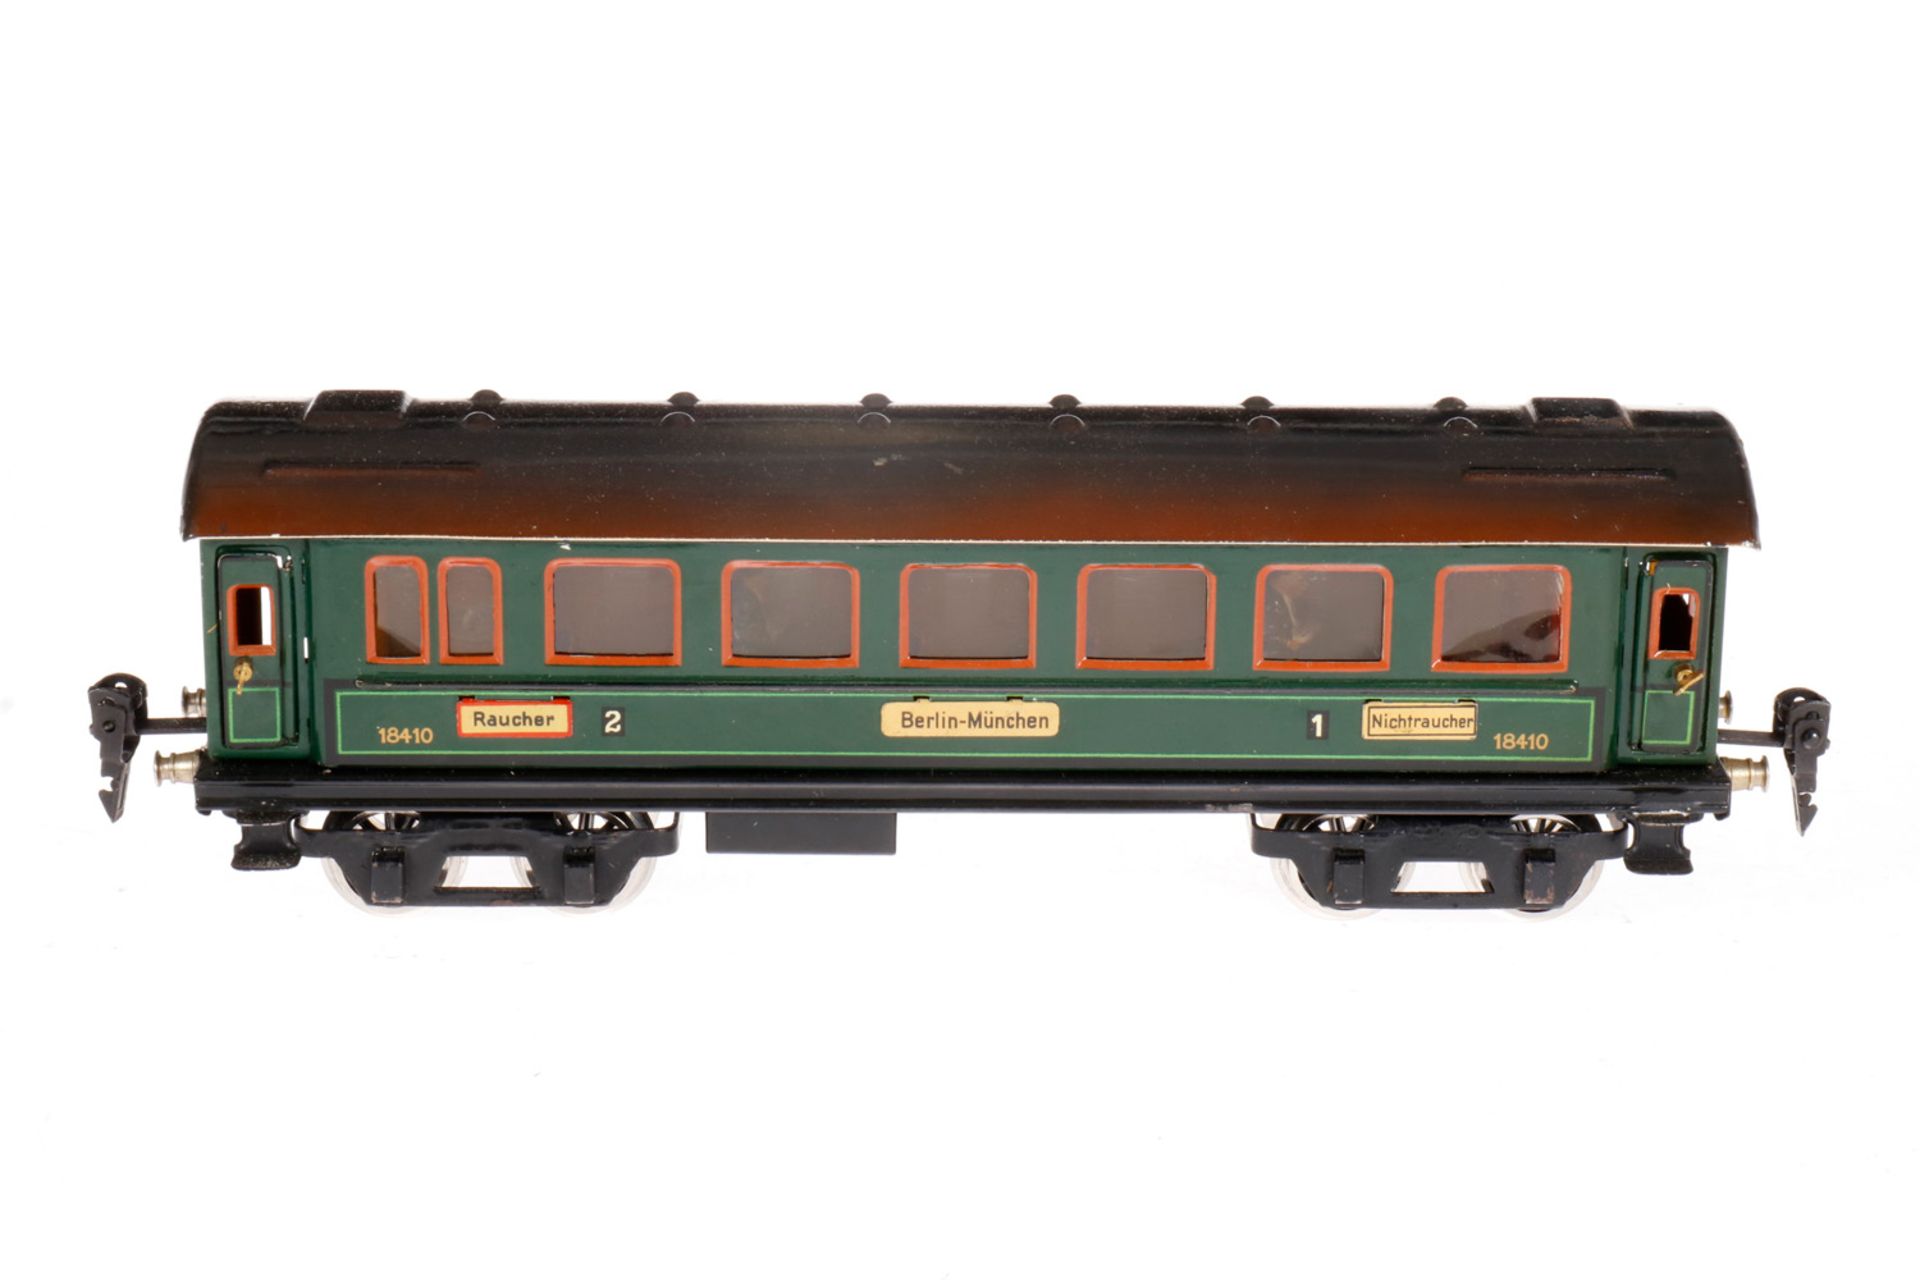 Märklin Personenwagen 1841 G, S 0, CL, mit Inneneinrichtung, 4 AT, Schildern und neuen Gussrädern,